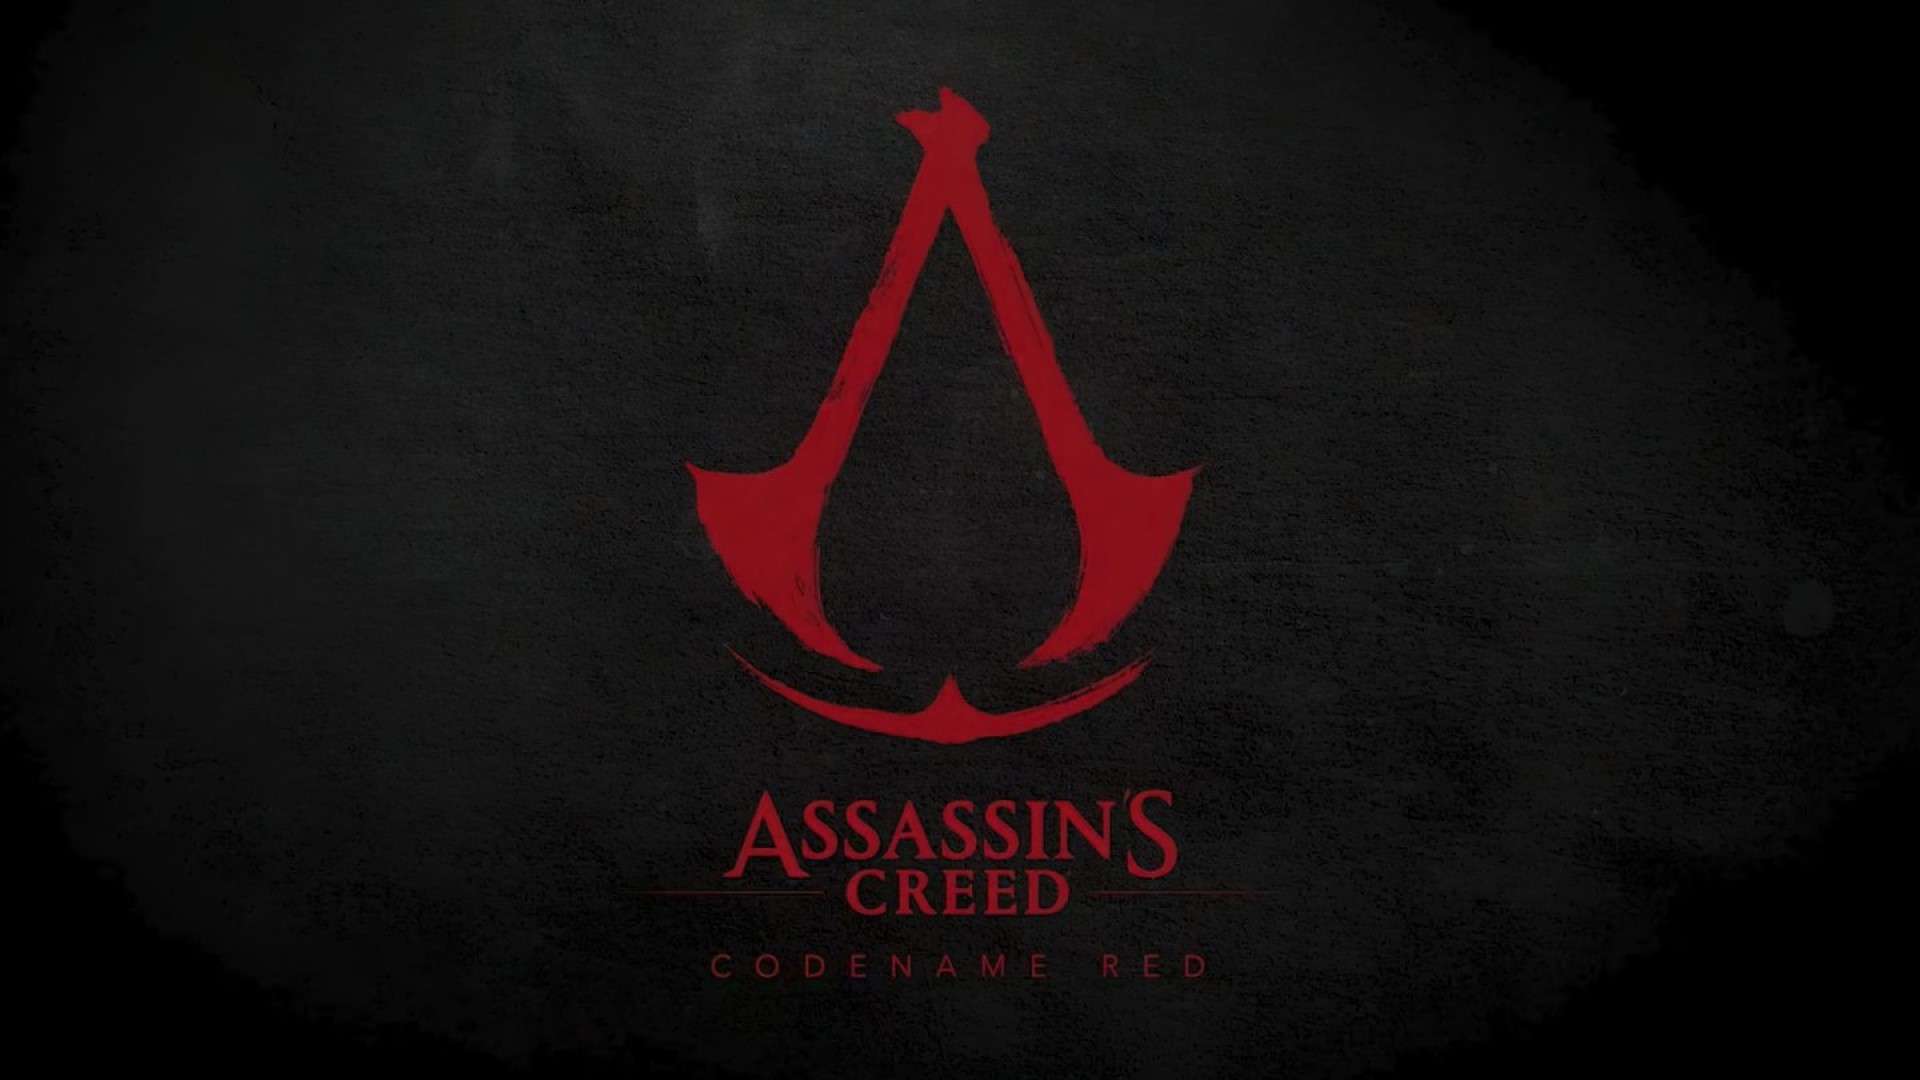 Assassin's Creed nome in codice rosso